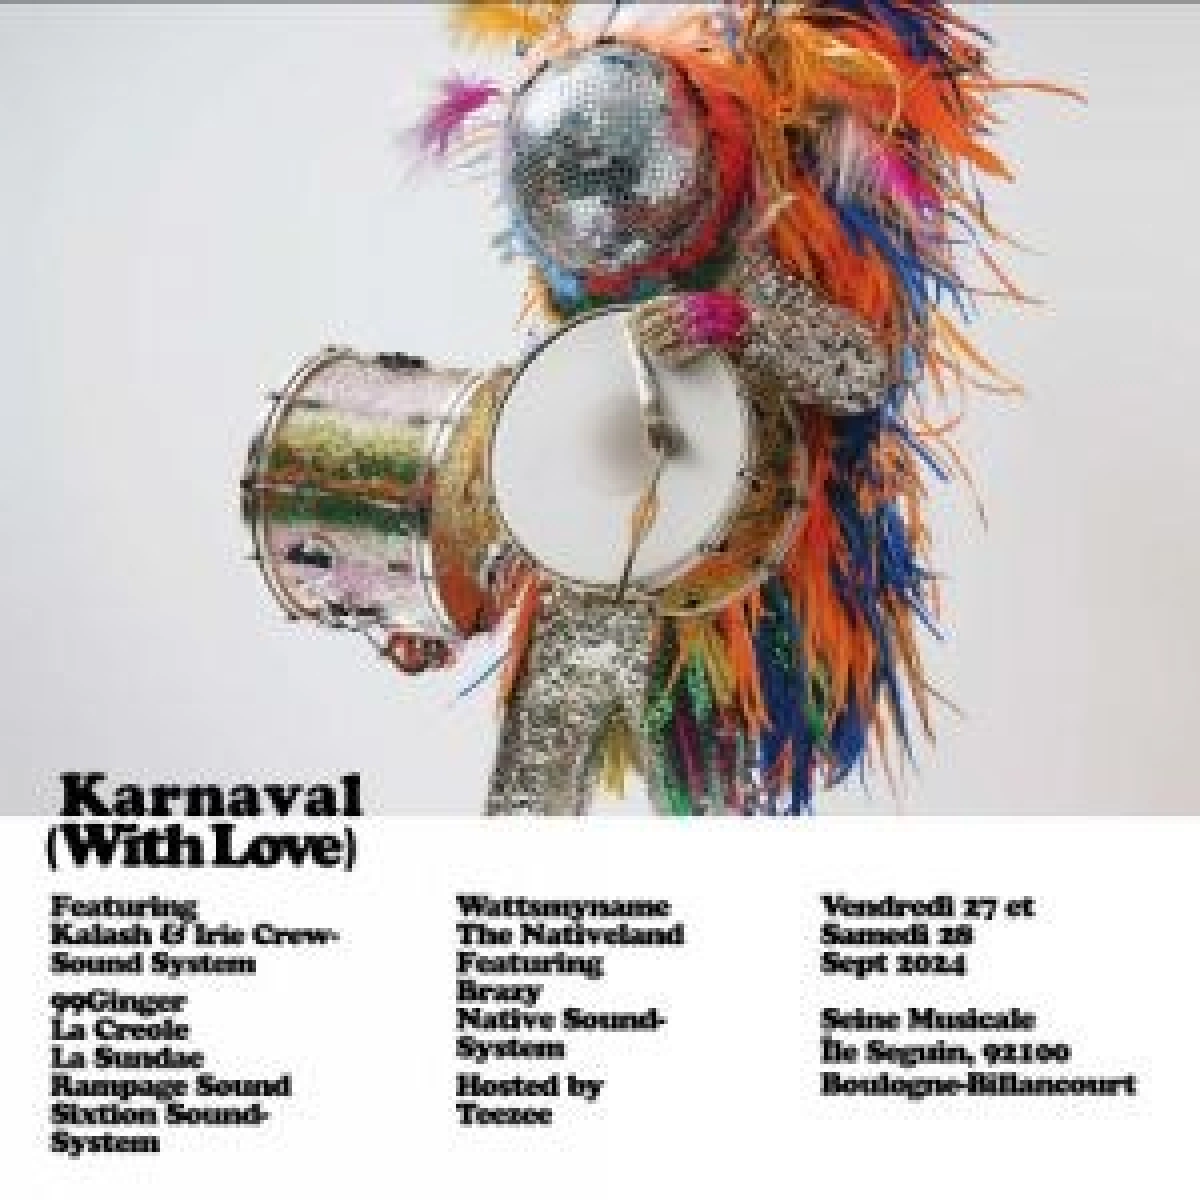 Karnaval at La Seine Musicale Tickets